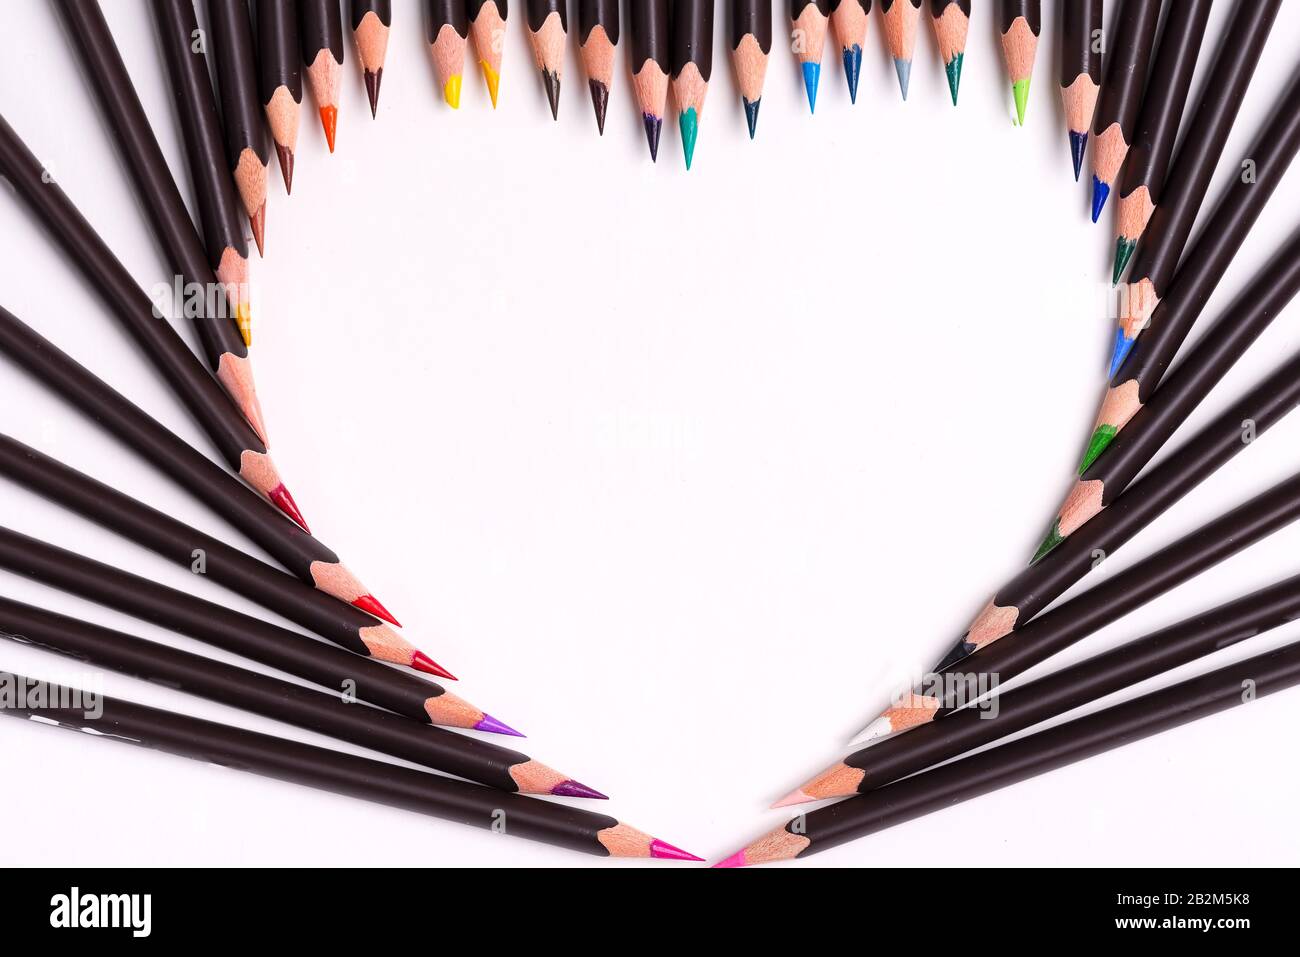 Motif de peinture à partir de crayons multicolores en forme de coeur sur un fond blanc avec espace de copie. Pose plate. Banque D'Images